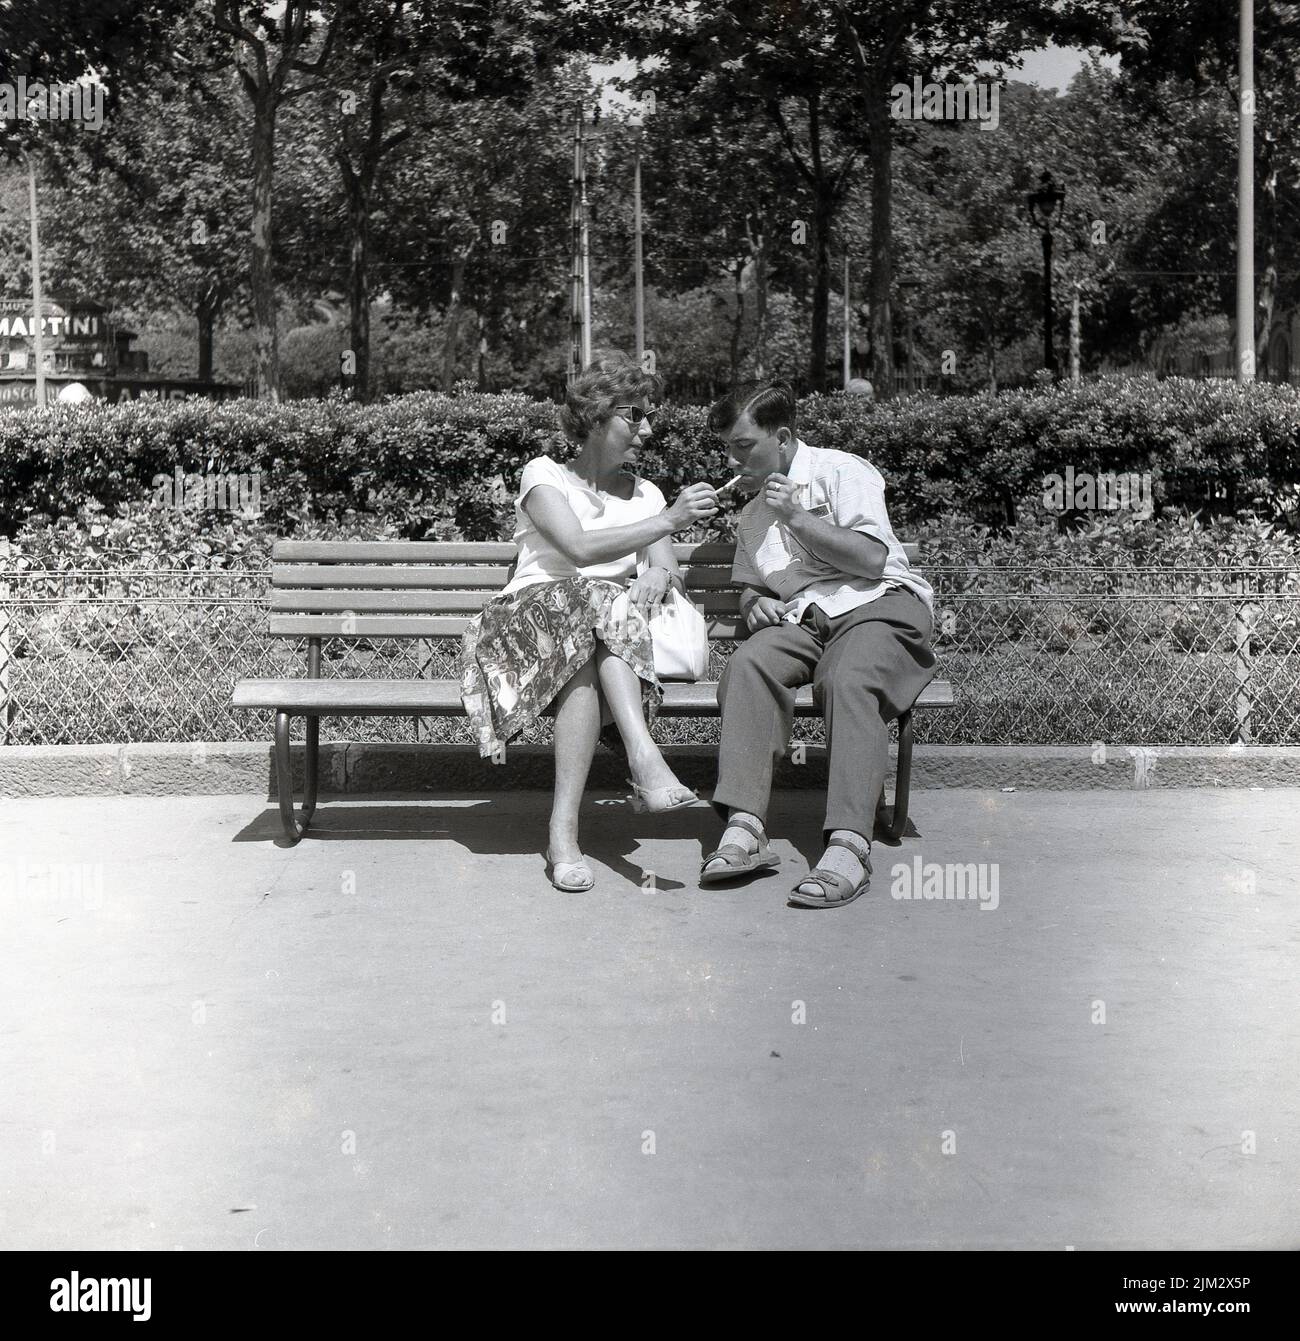 1950s, histórico, un día soleado y una señora sentada en un banco al lado de un hombre, encendiendo su cigarrillo, usando su propio cigarrillo encendido, Inglaterra, Reino Unido. Foto de stock